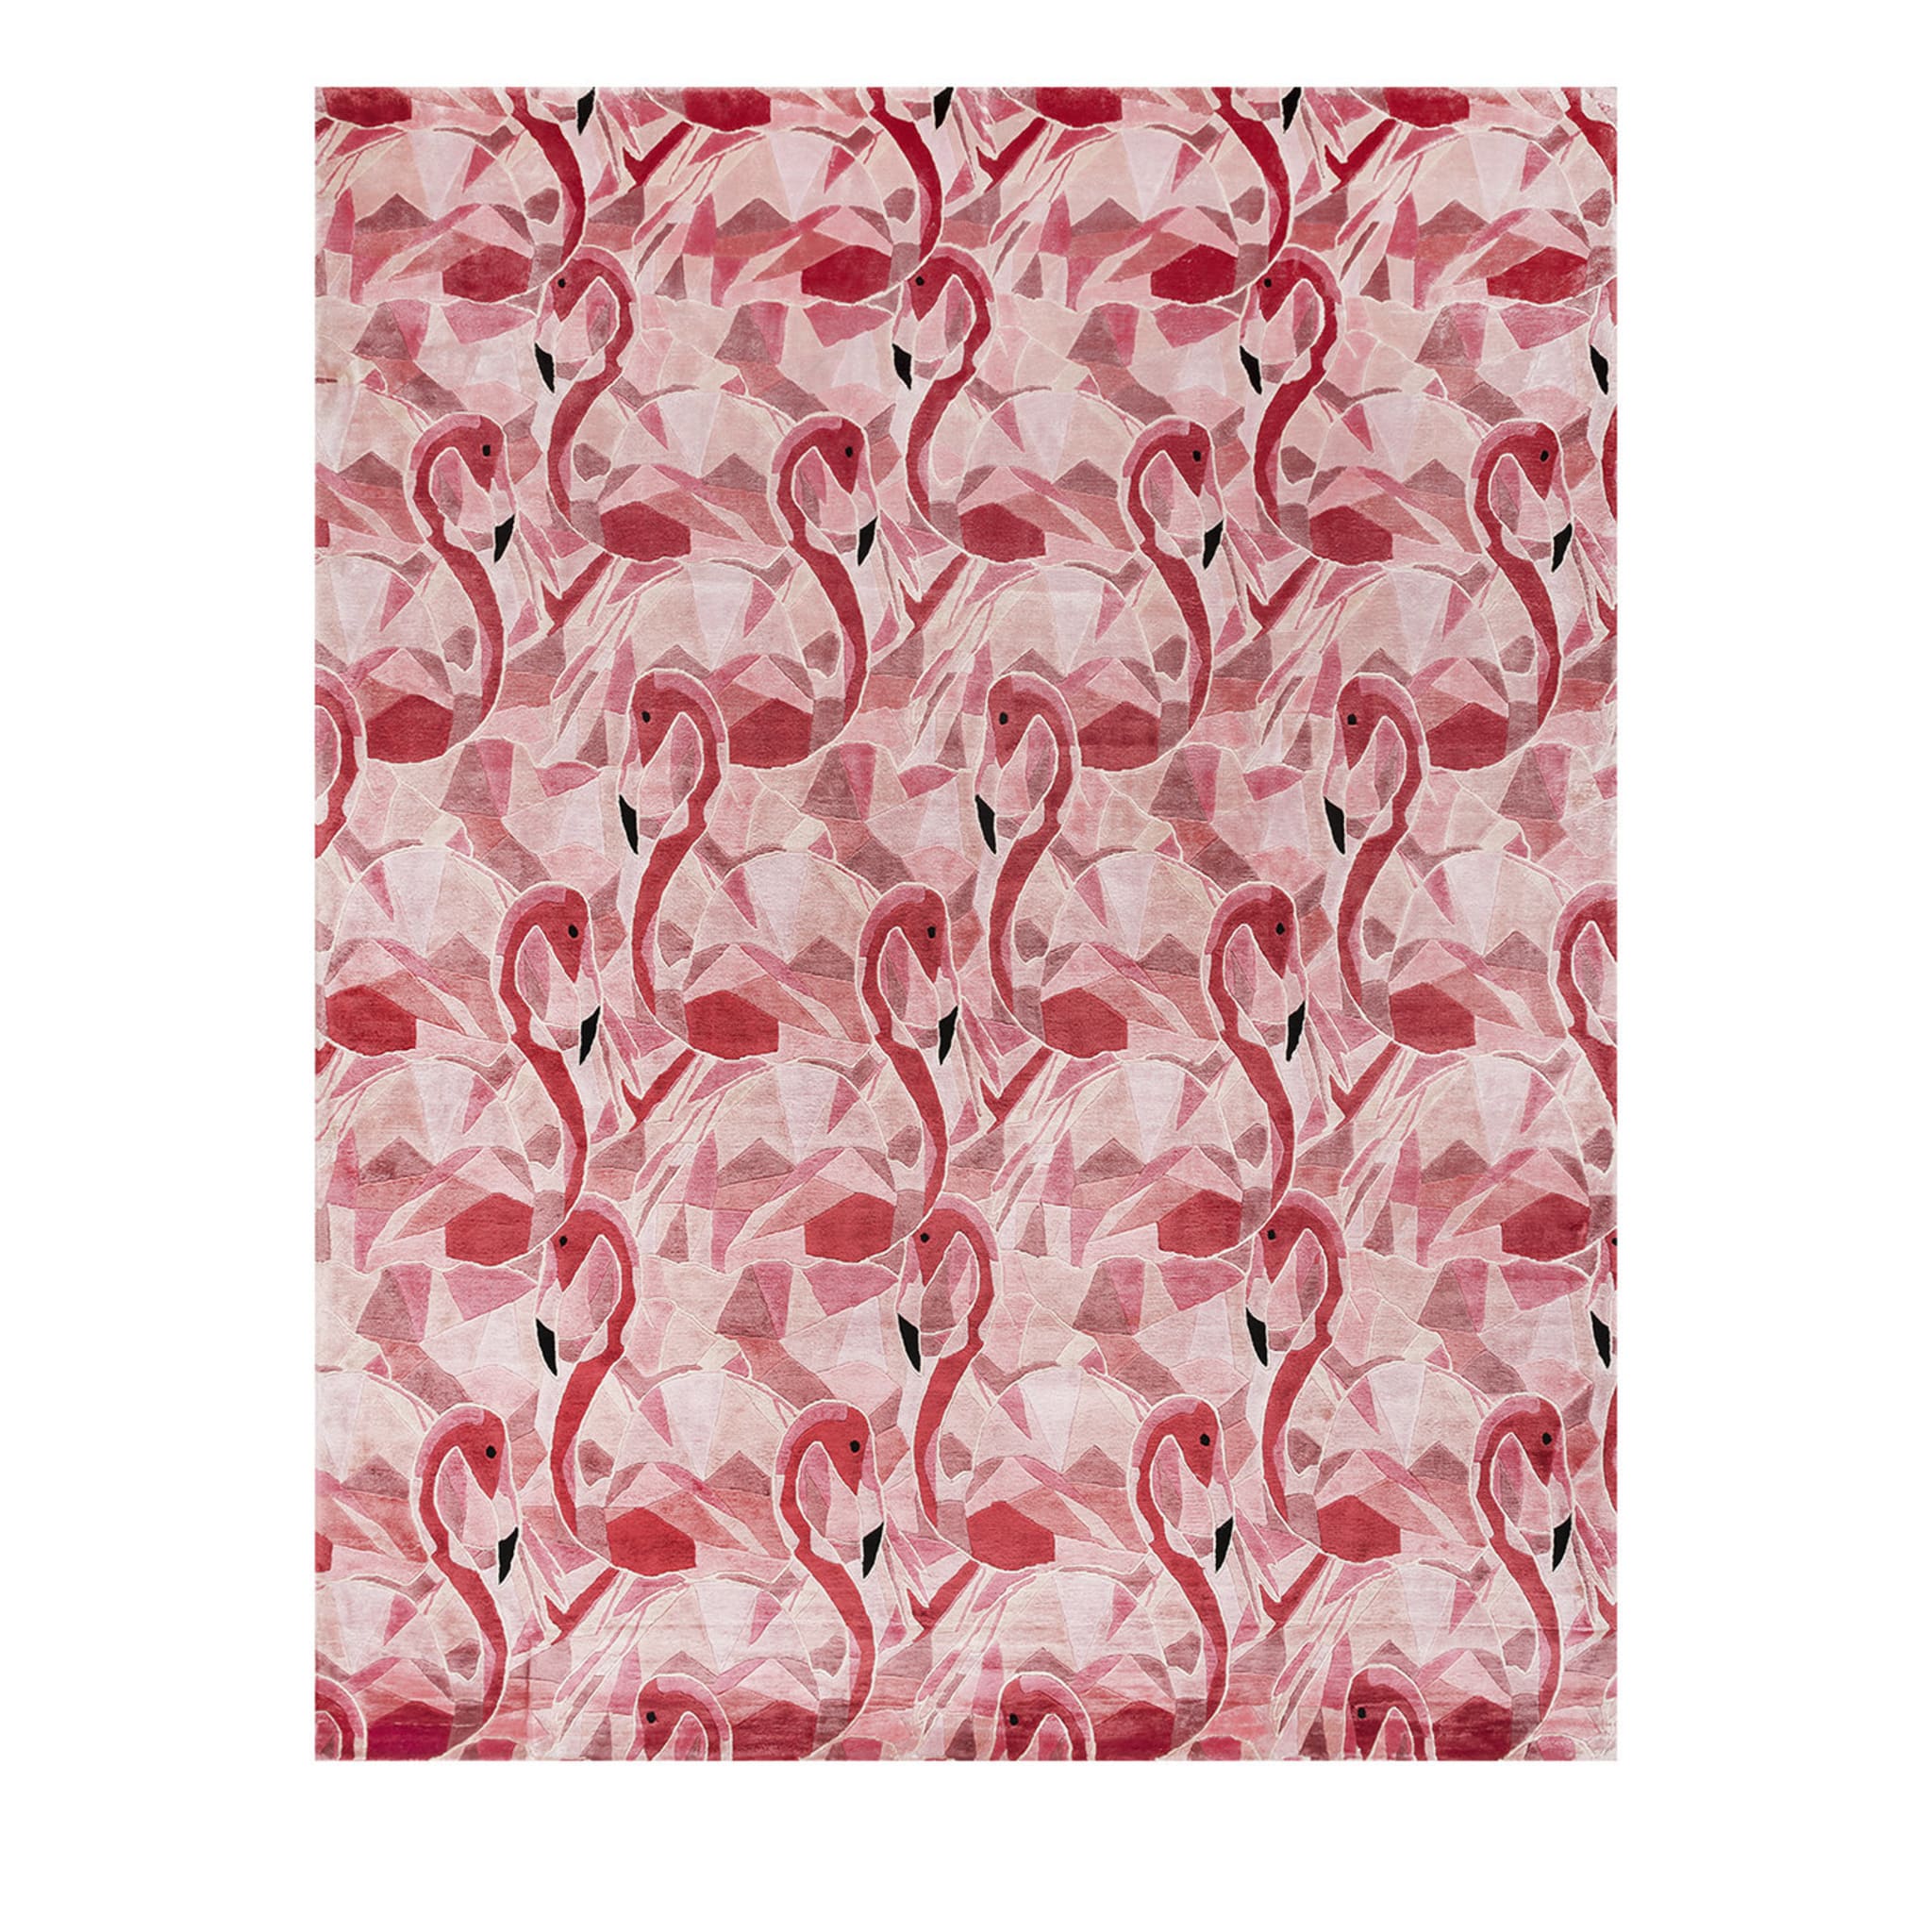 Flamingo-Teppich von Illulian Design Studio - Hauptansicht